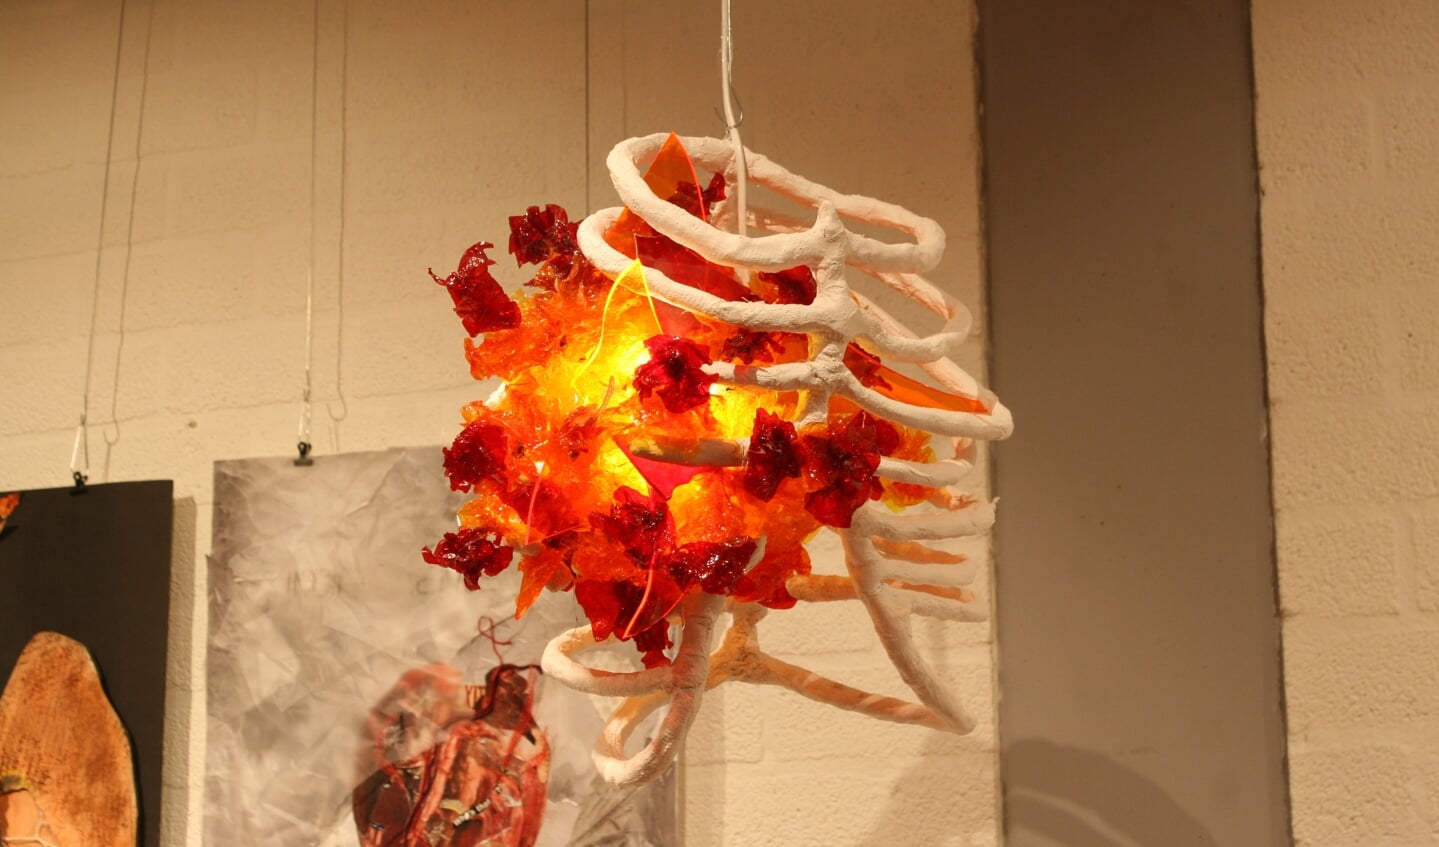 Kunstwerk van Marileen Janssen
'Detonation'